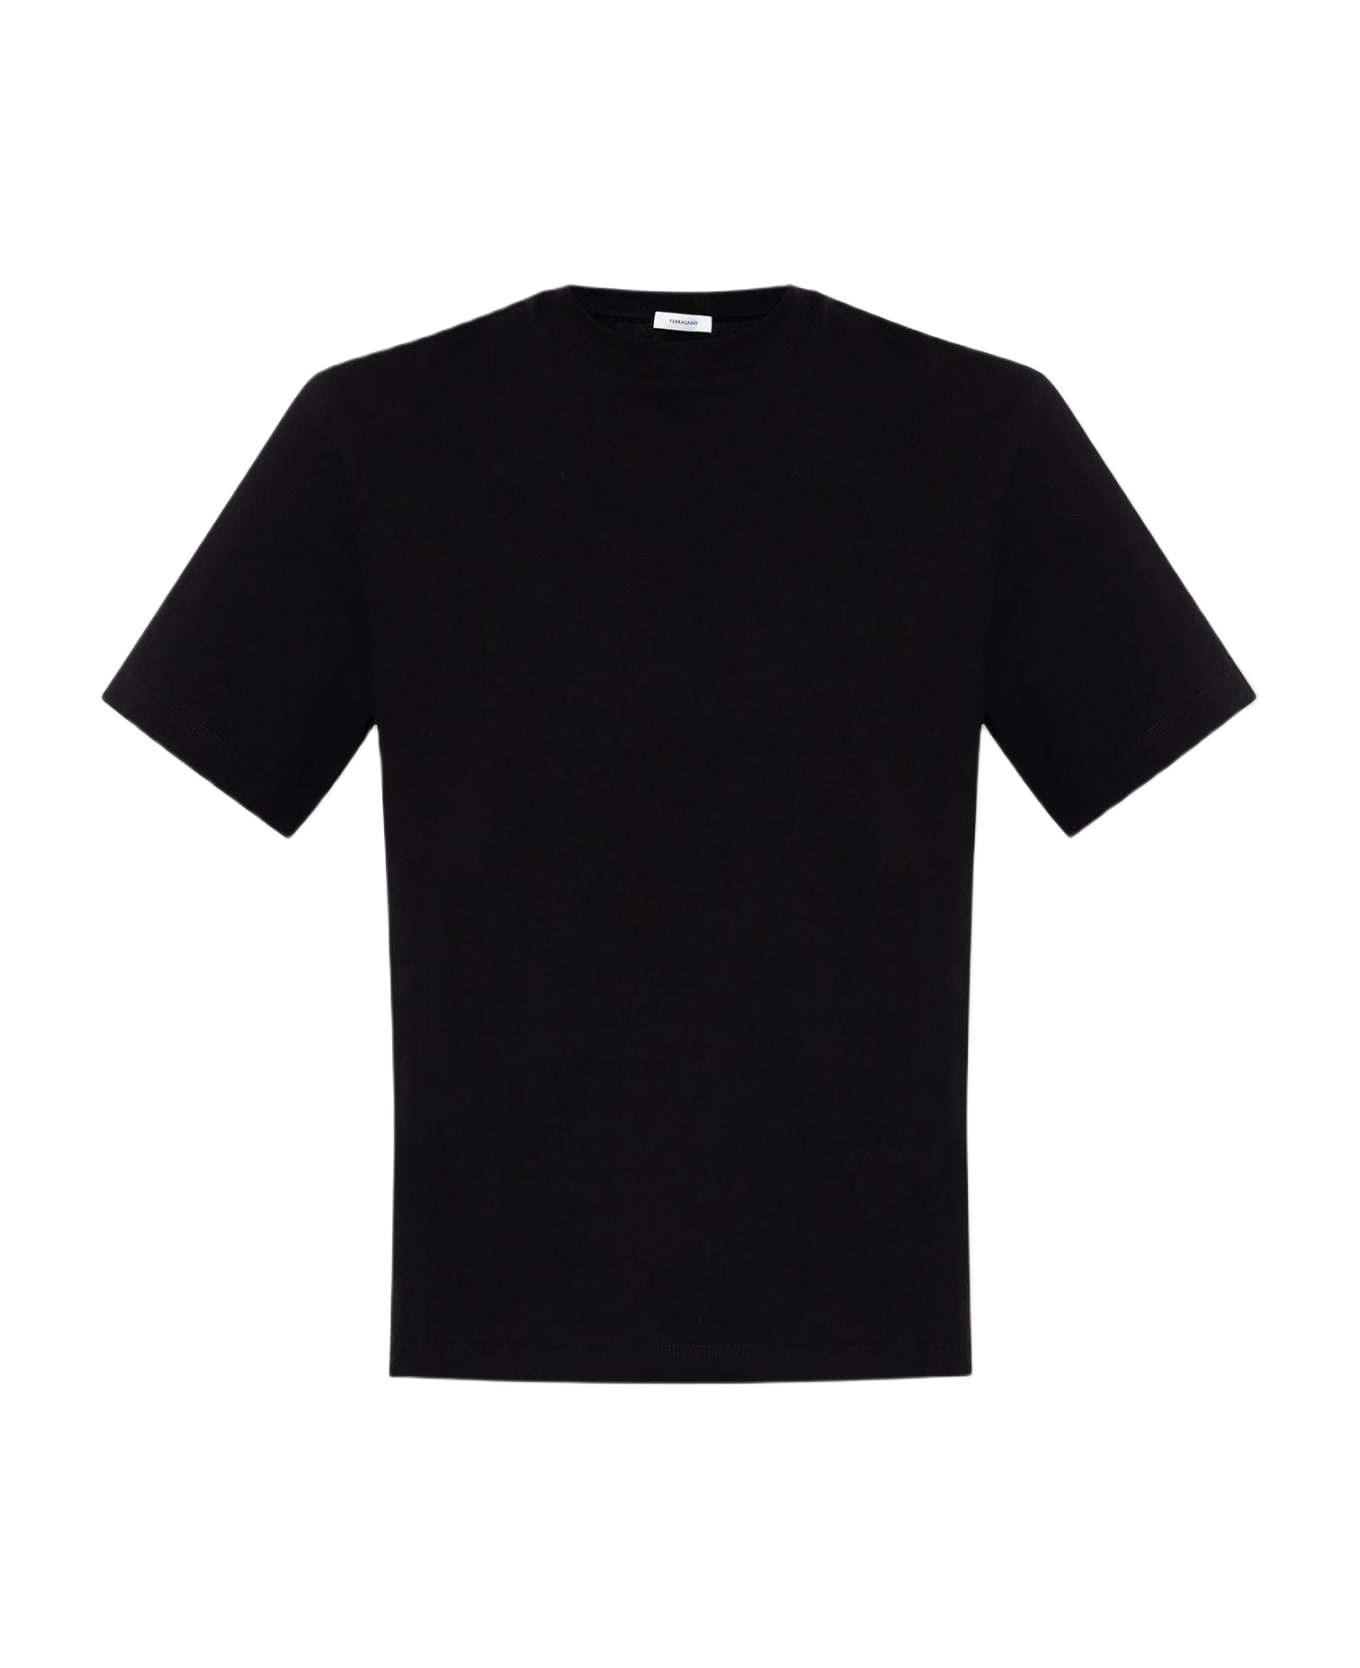 Ferragamo T-shirt With Logo - Black